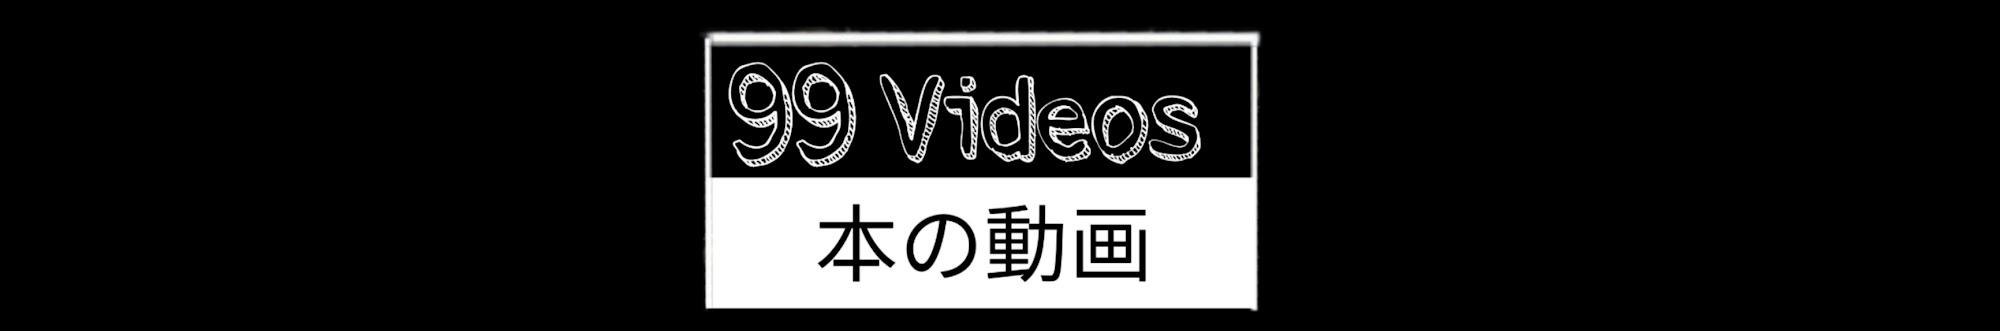 99 Videos